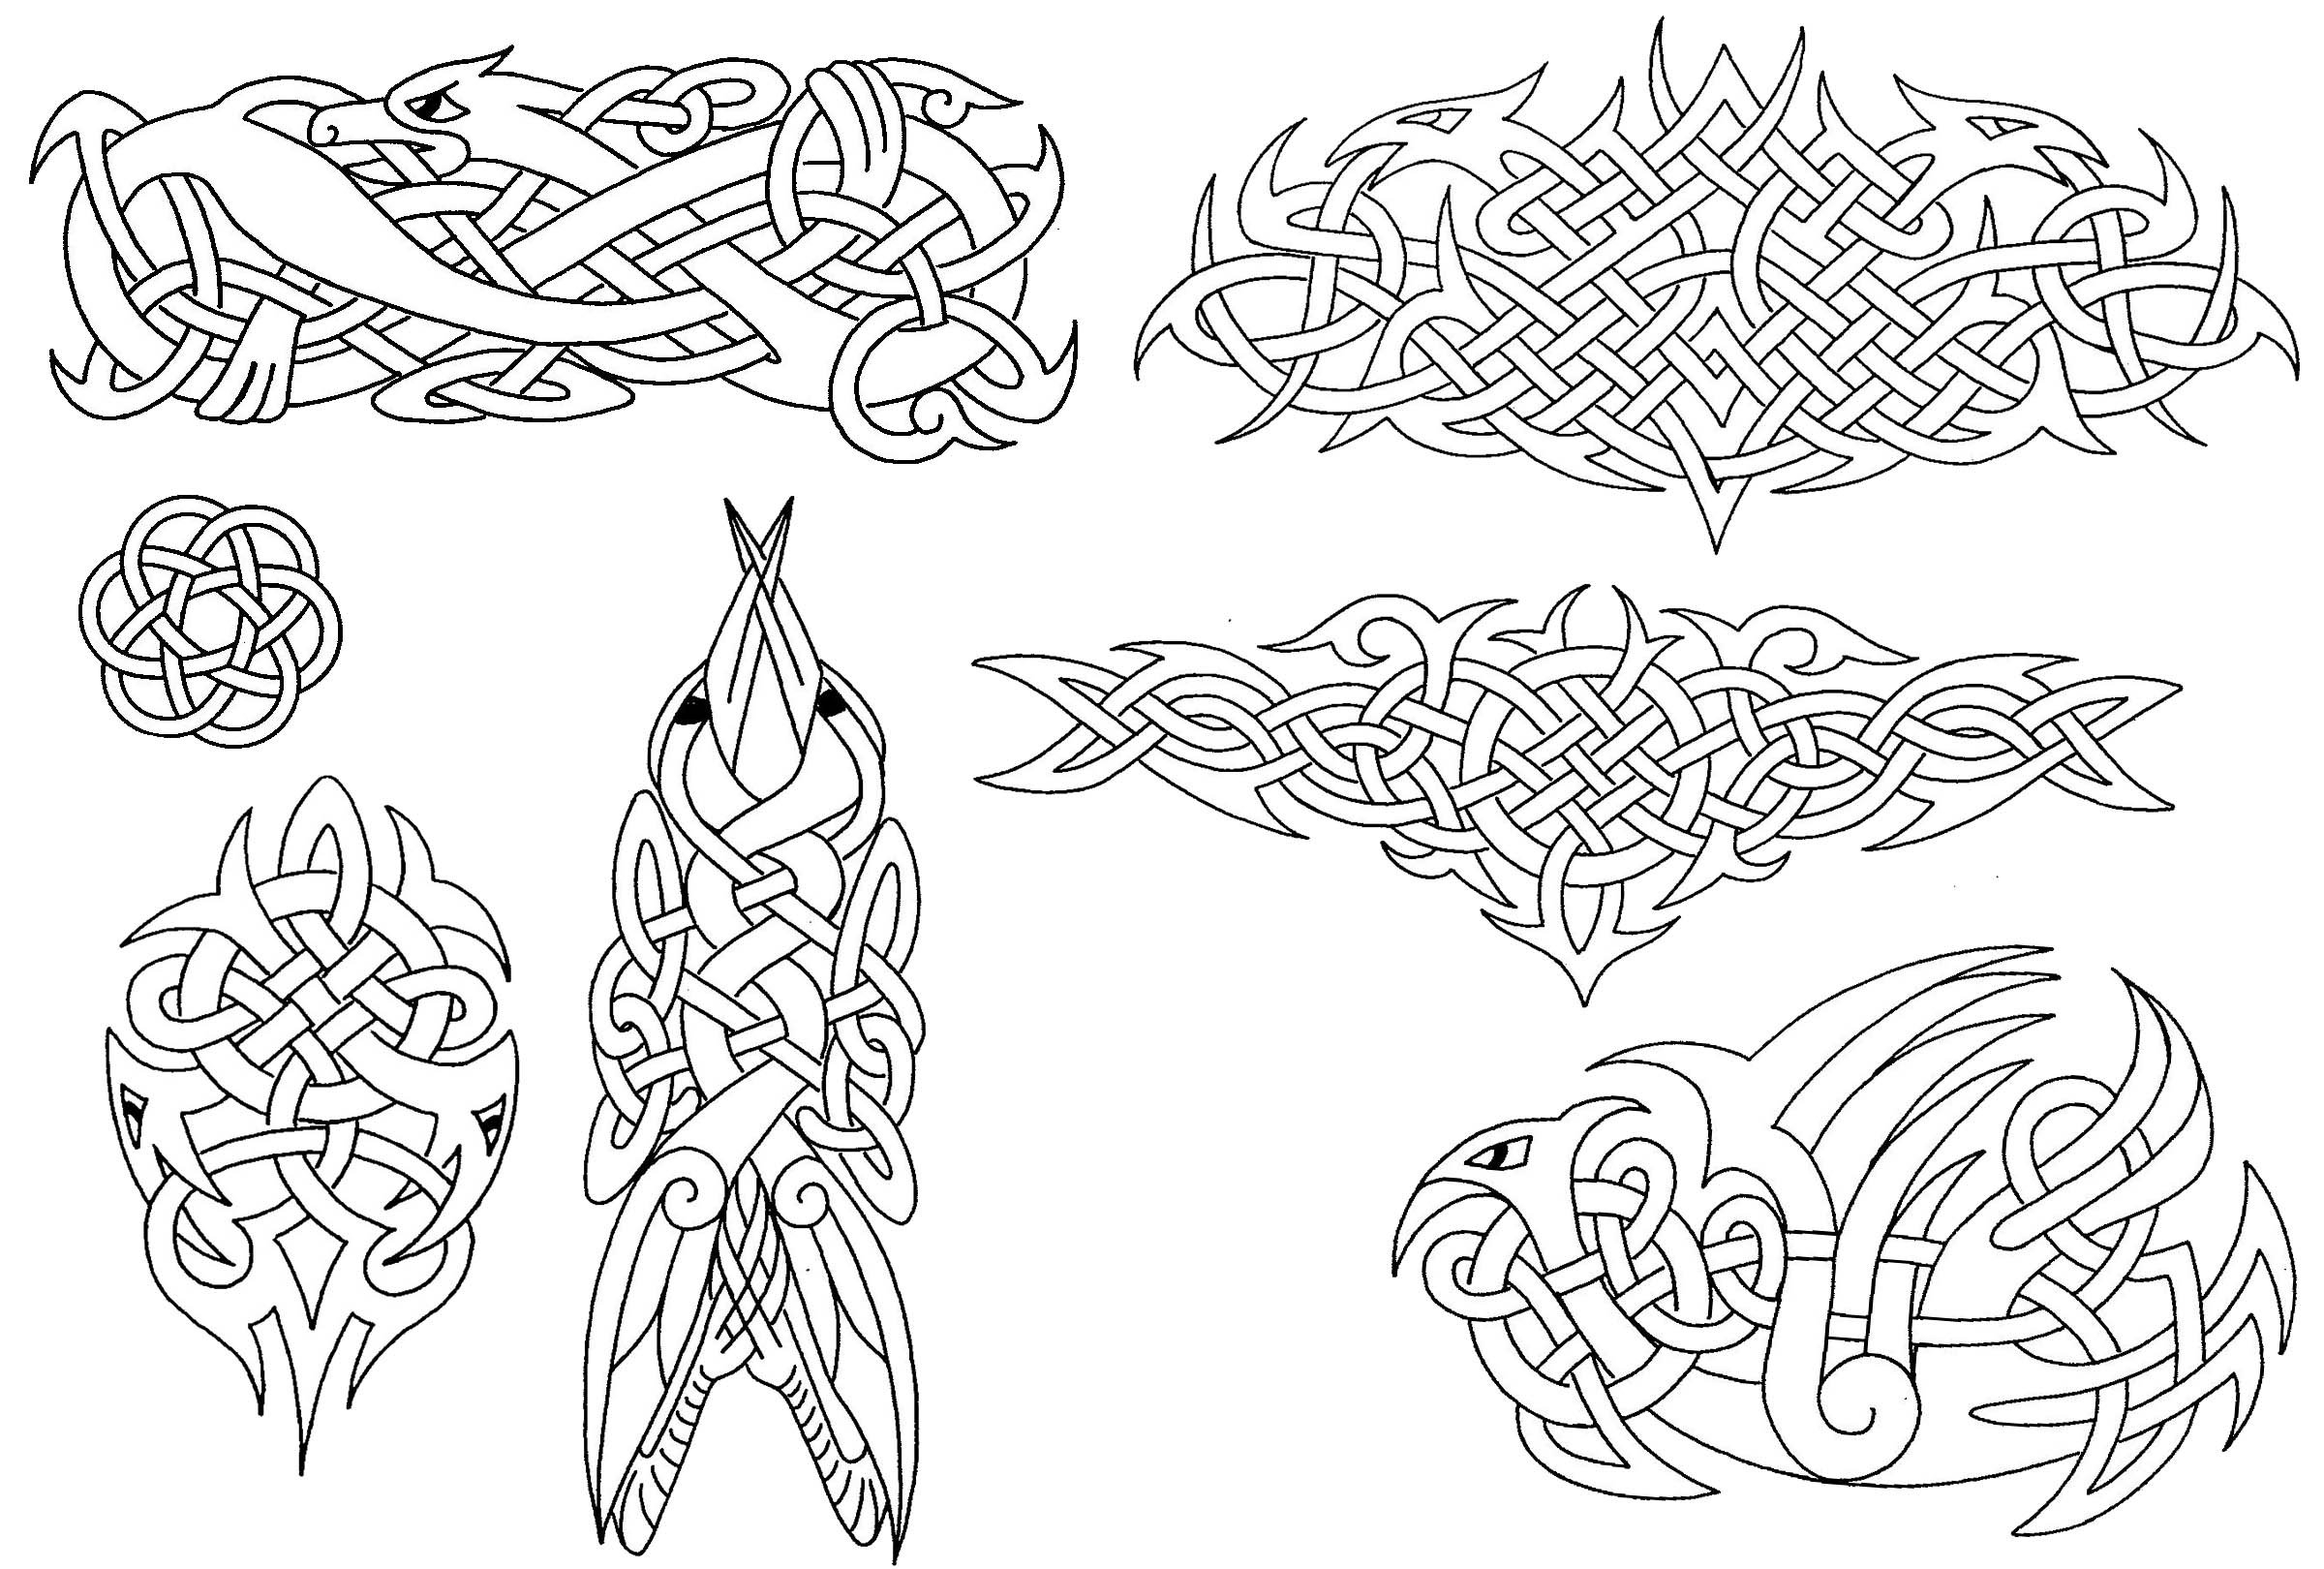 Кельтские символы, руны, тату, знаки: их значение, описание и толкование